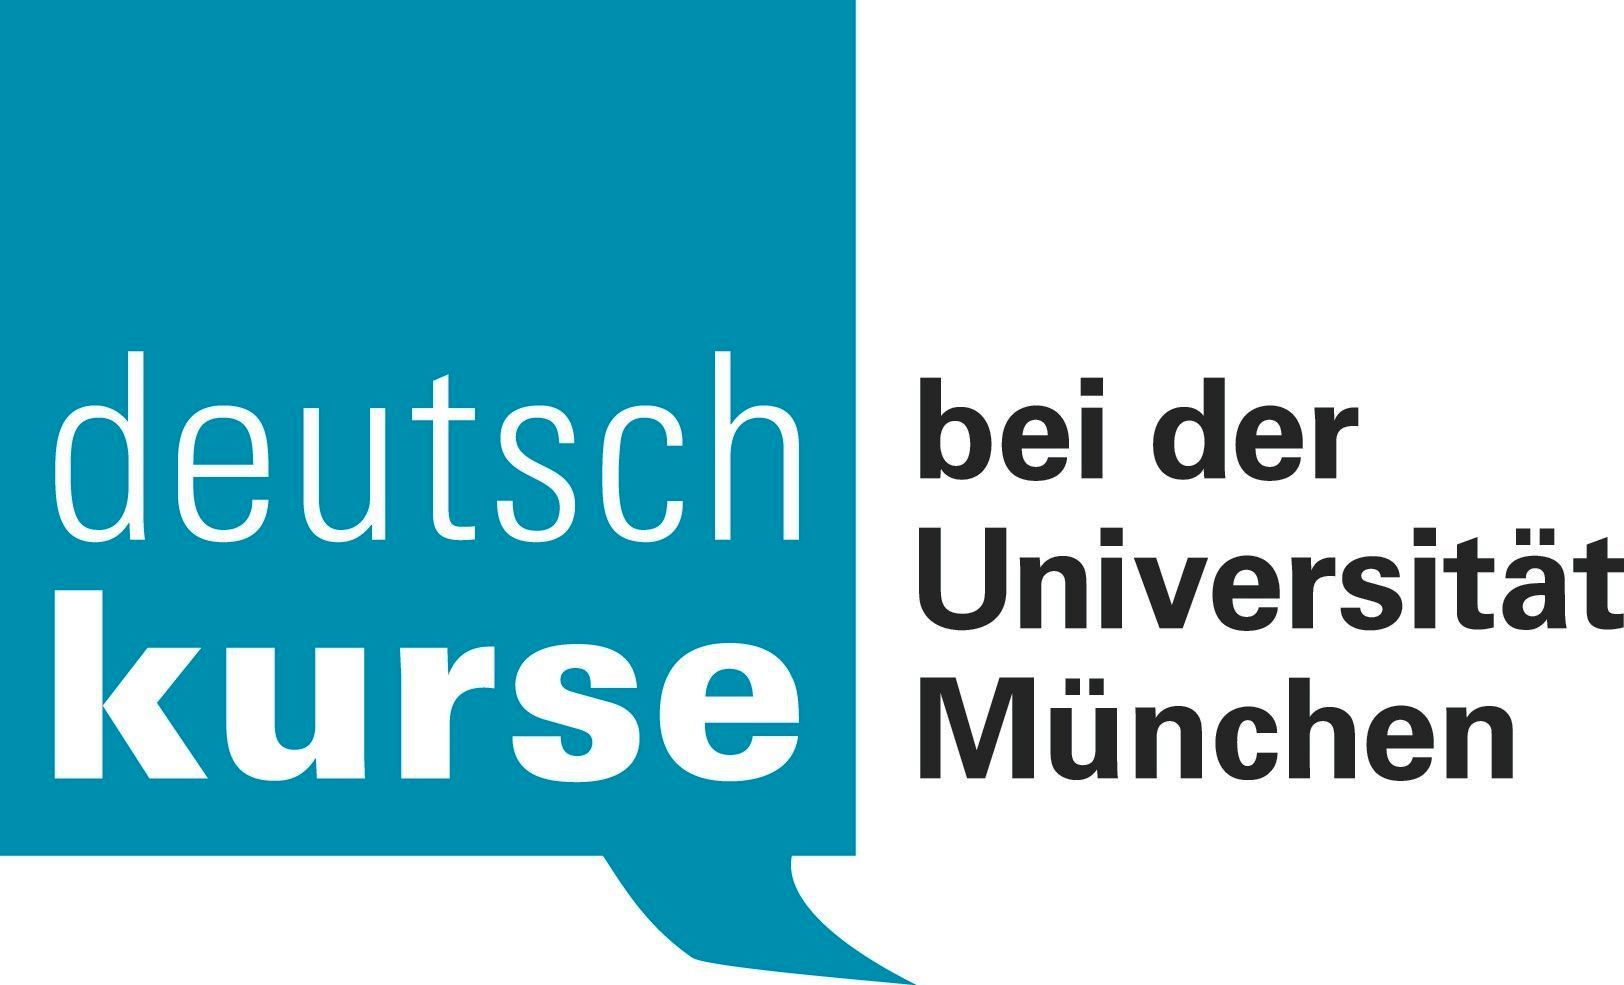 Deutschkurse bei der Universität München